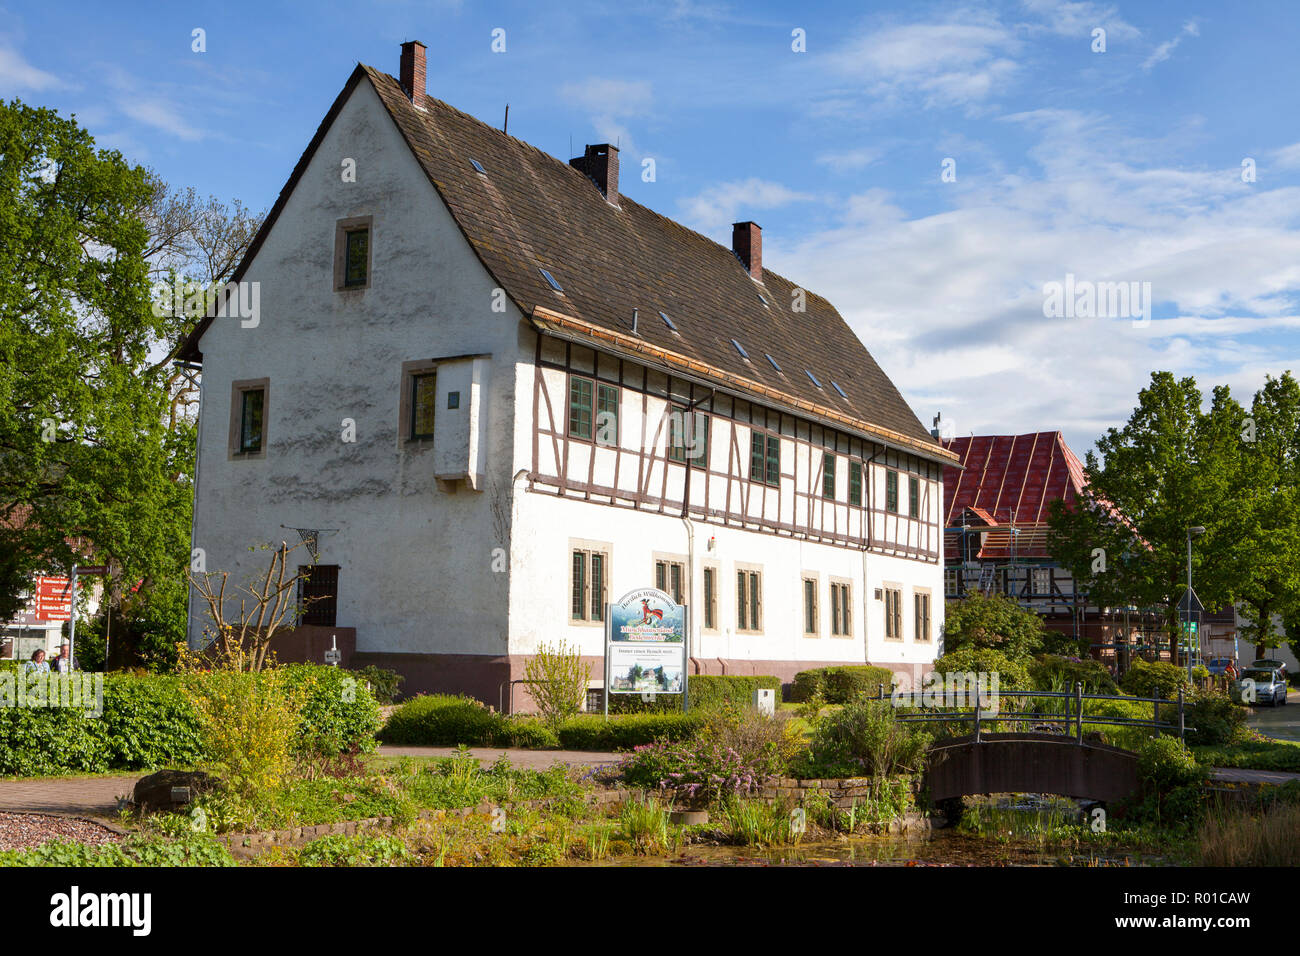 Hôtel de ville, lieu de naissance et la résidence du Baron Muenchhausen, Bodenwerder, Weserbergland, Basse-Saxe, Allemagne, Europe Banque D'Images